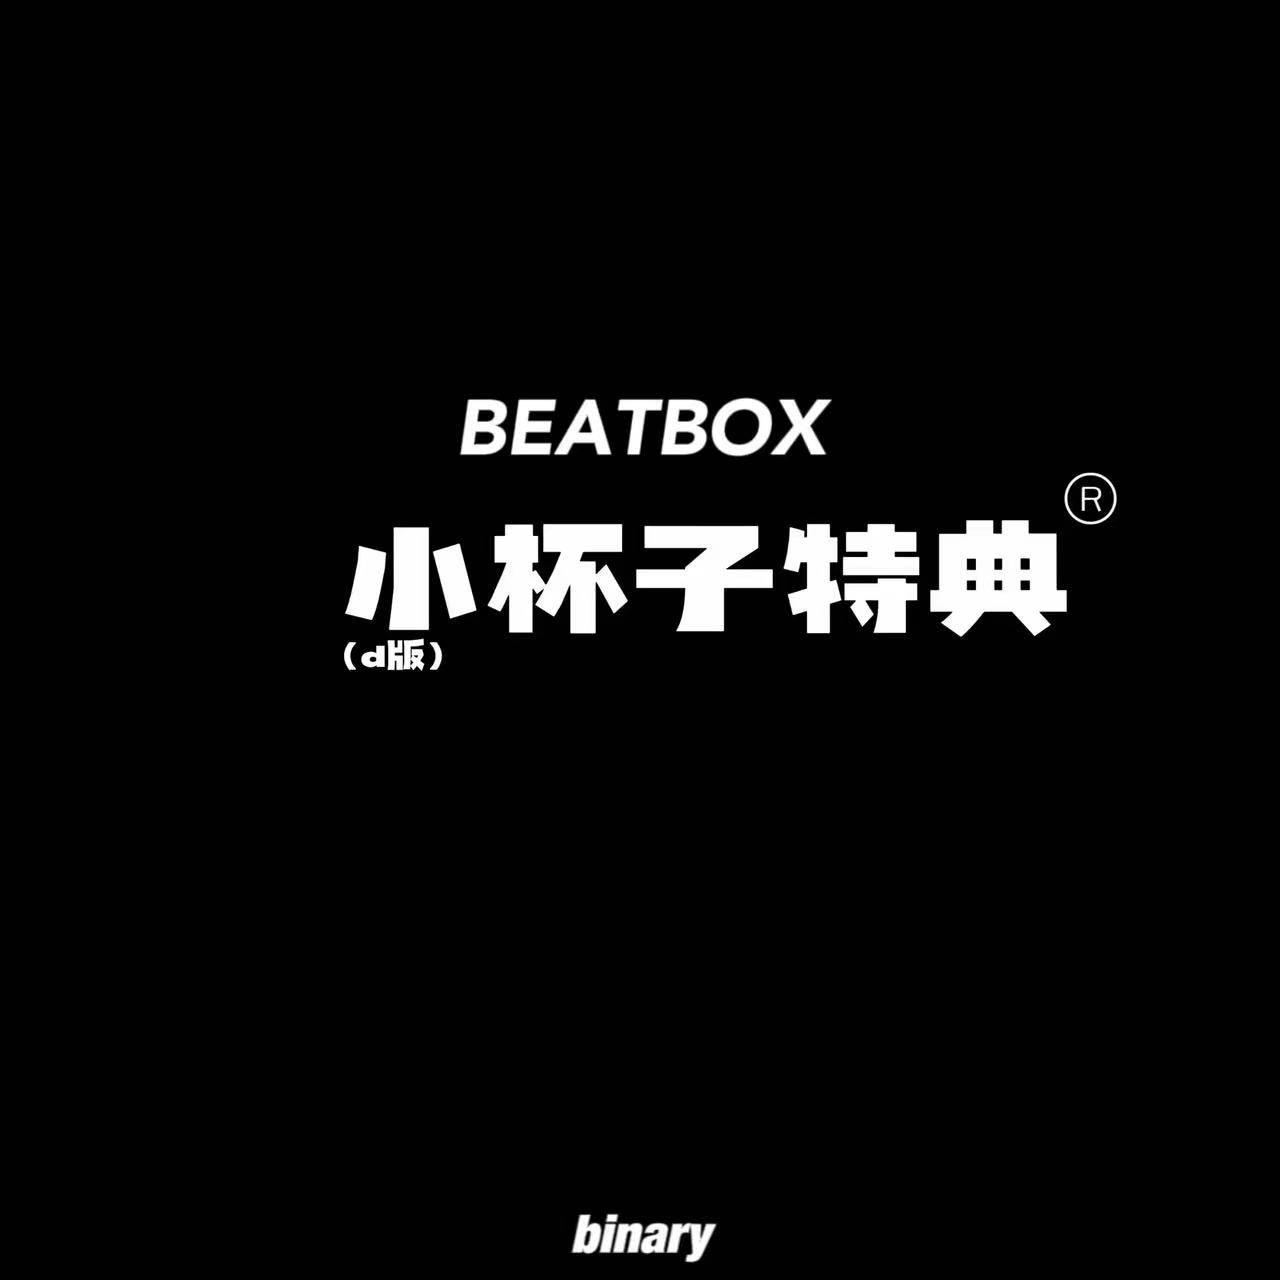 [全款 杯子特典] NCT DREAM - 正规2辑后续专辑 [Beatbox] (Digipack Ver.) (随机版本) *购买多张尽量发不同封面 _Binary_诺民博物志